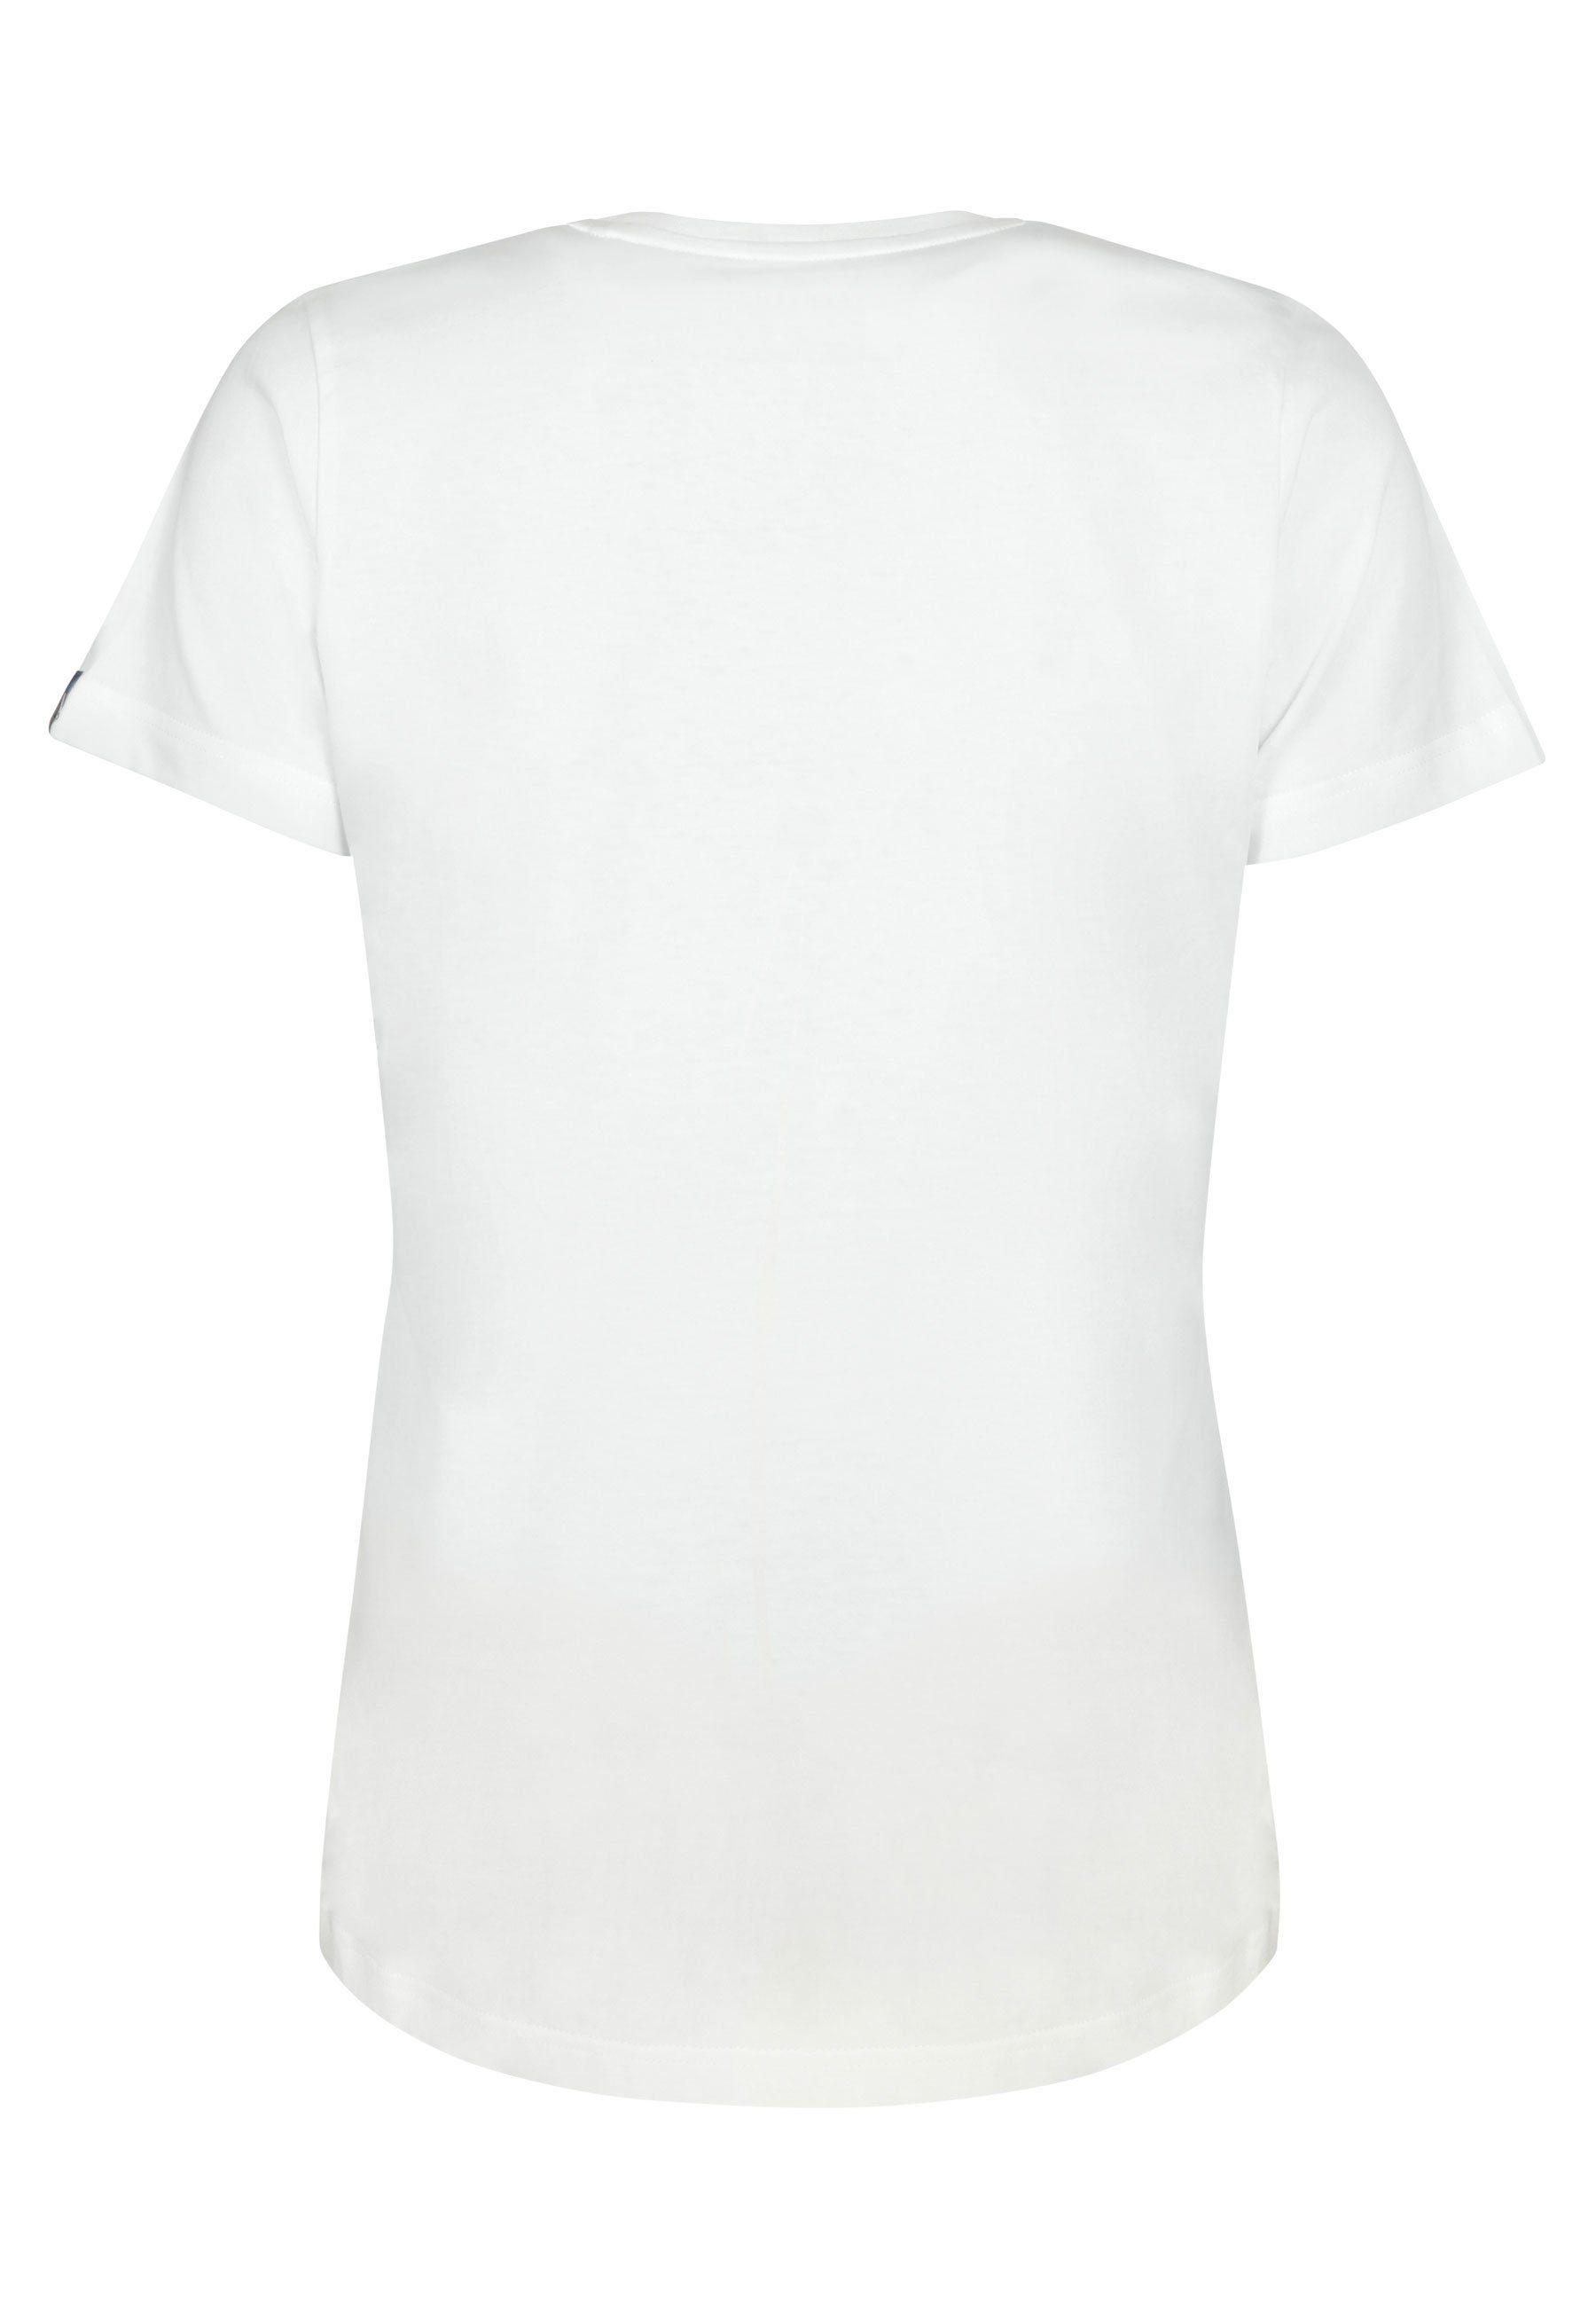 Elkline T-Shirt Sausewind Jersey Aufdruck Bike Fahrrad Shirt White